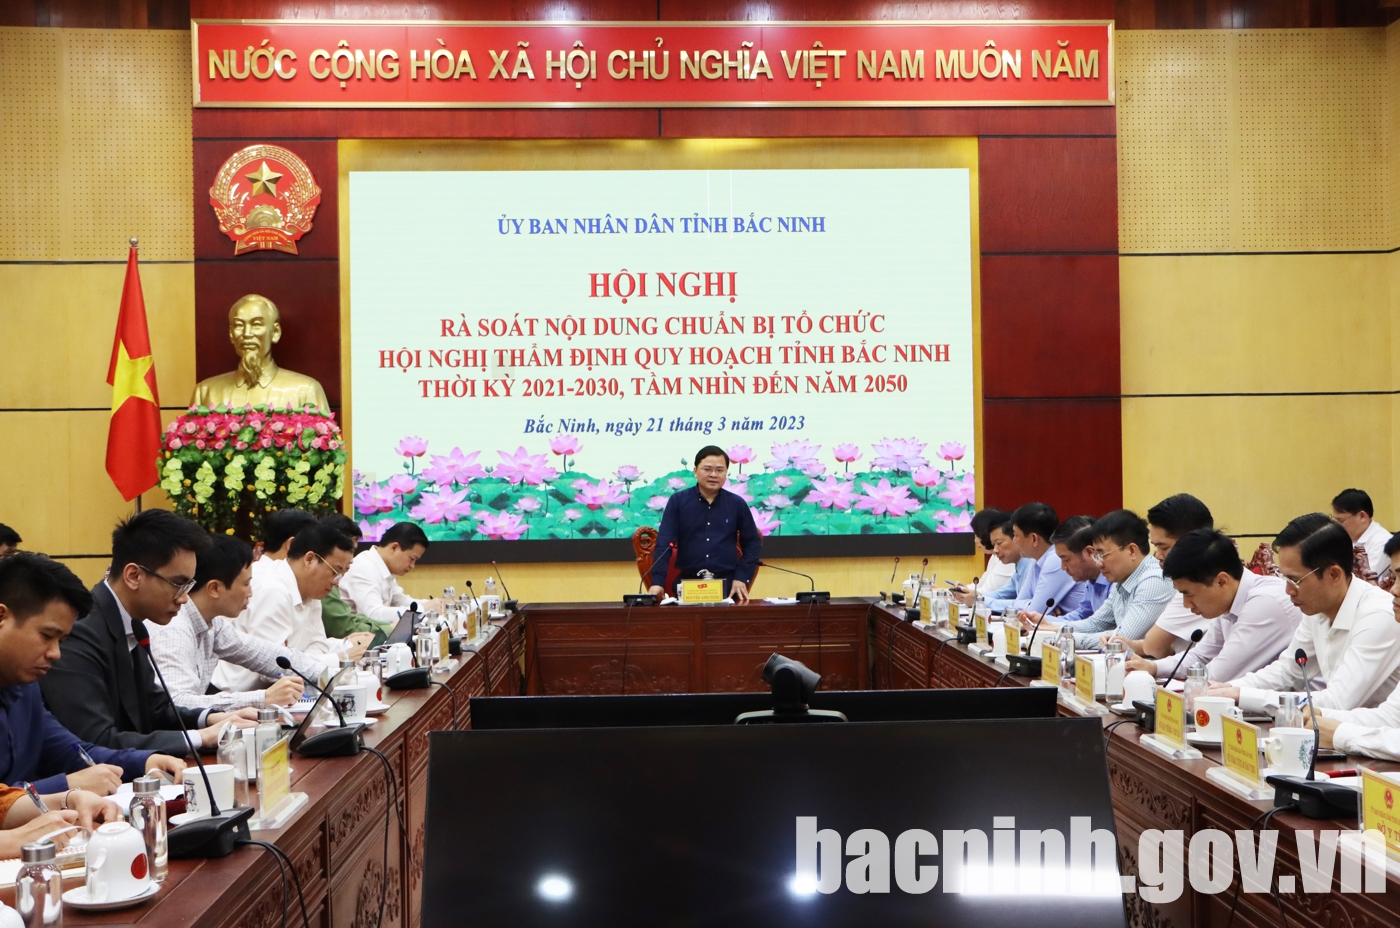 UBND tỉnh rà soát nội dung chuẩn bị hội nghị thẩm định Quy hoạch tỉnh Bắc Ninh